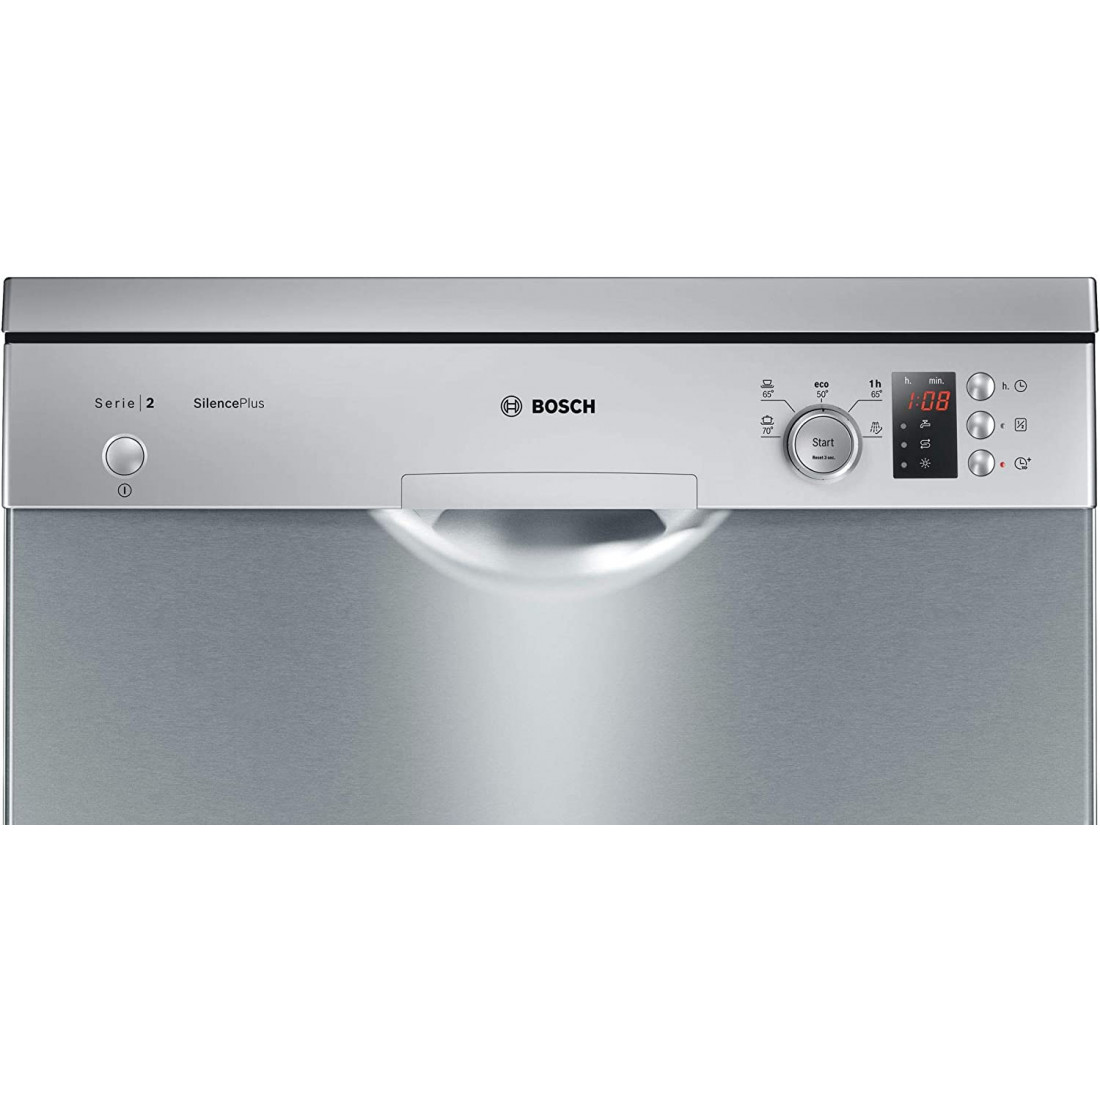 Lave-vaisselle Bosch SMS2HTW05E